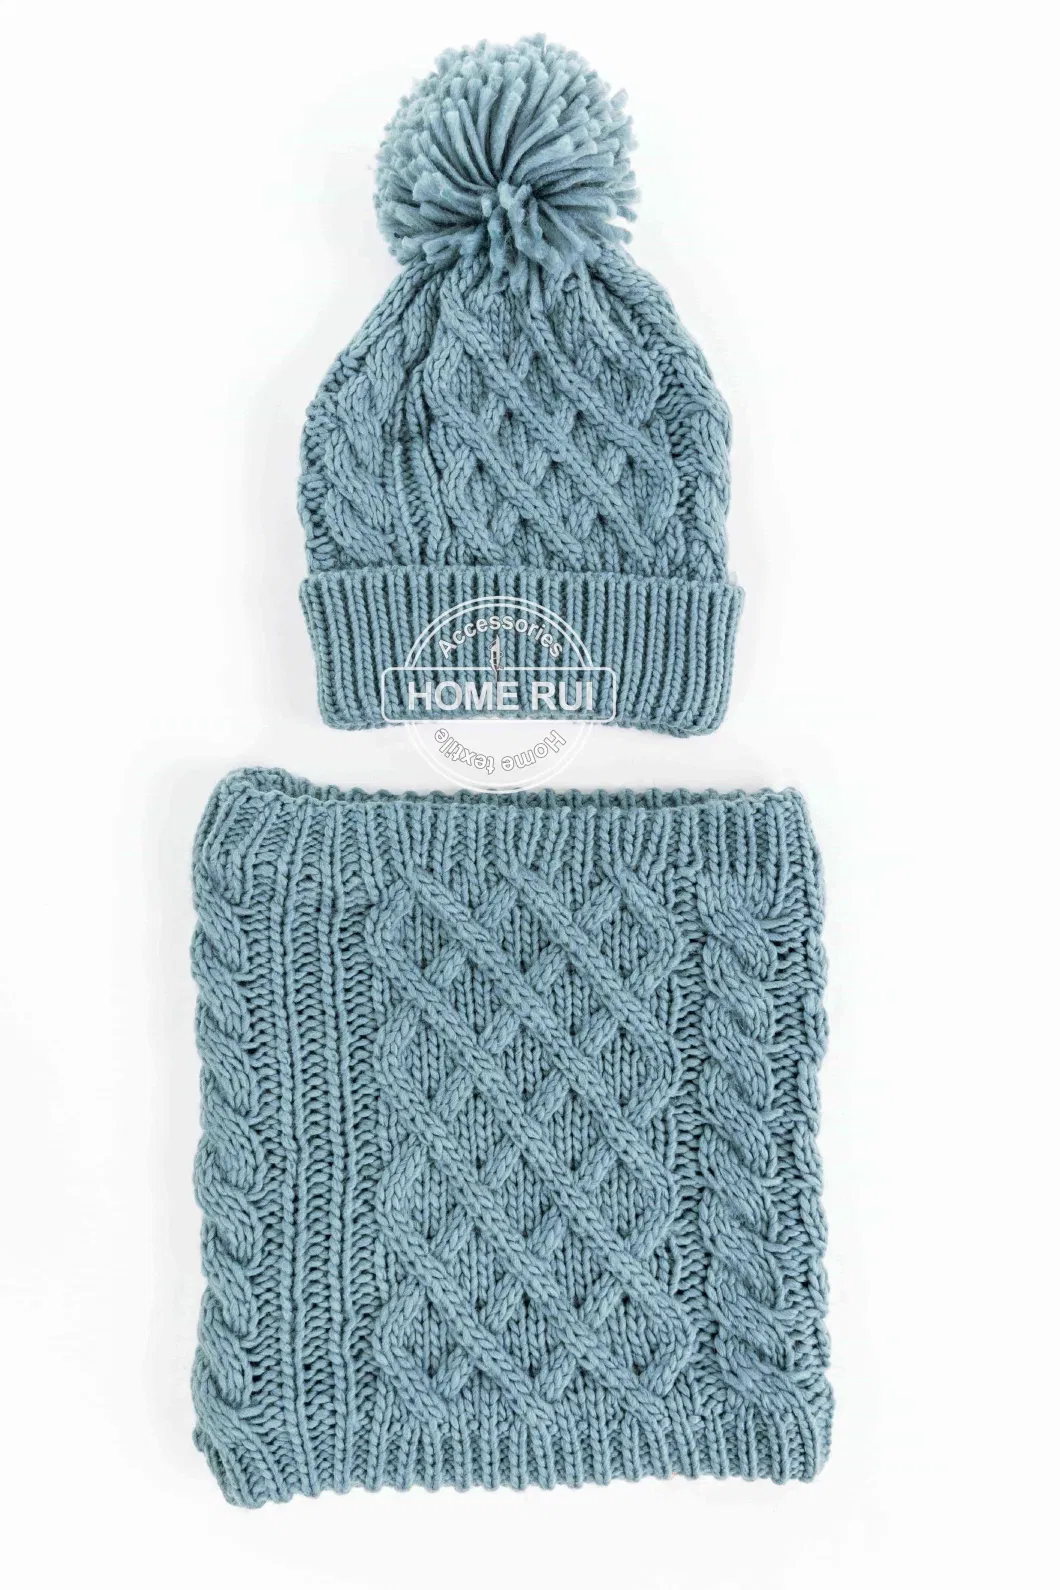 Unisex Women Ladies Beanie Scarf Winter Sets Cross Knit Cable Design Hat Cap Neck Warmer Fleece Double Layers Snood Hat Bonnet